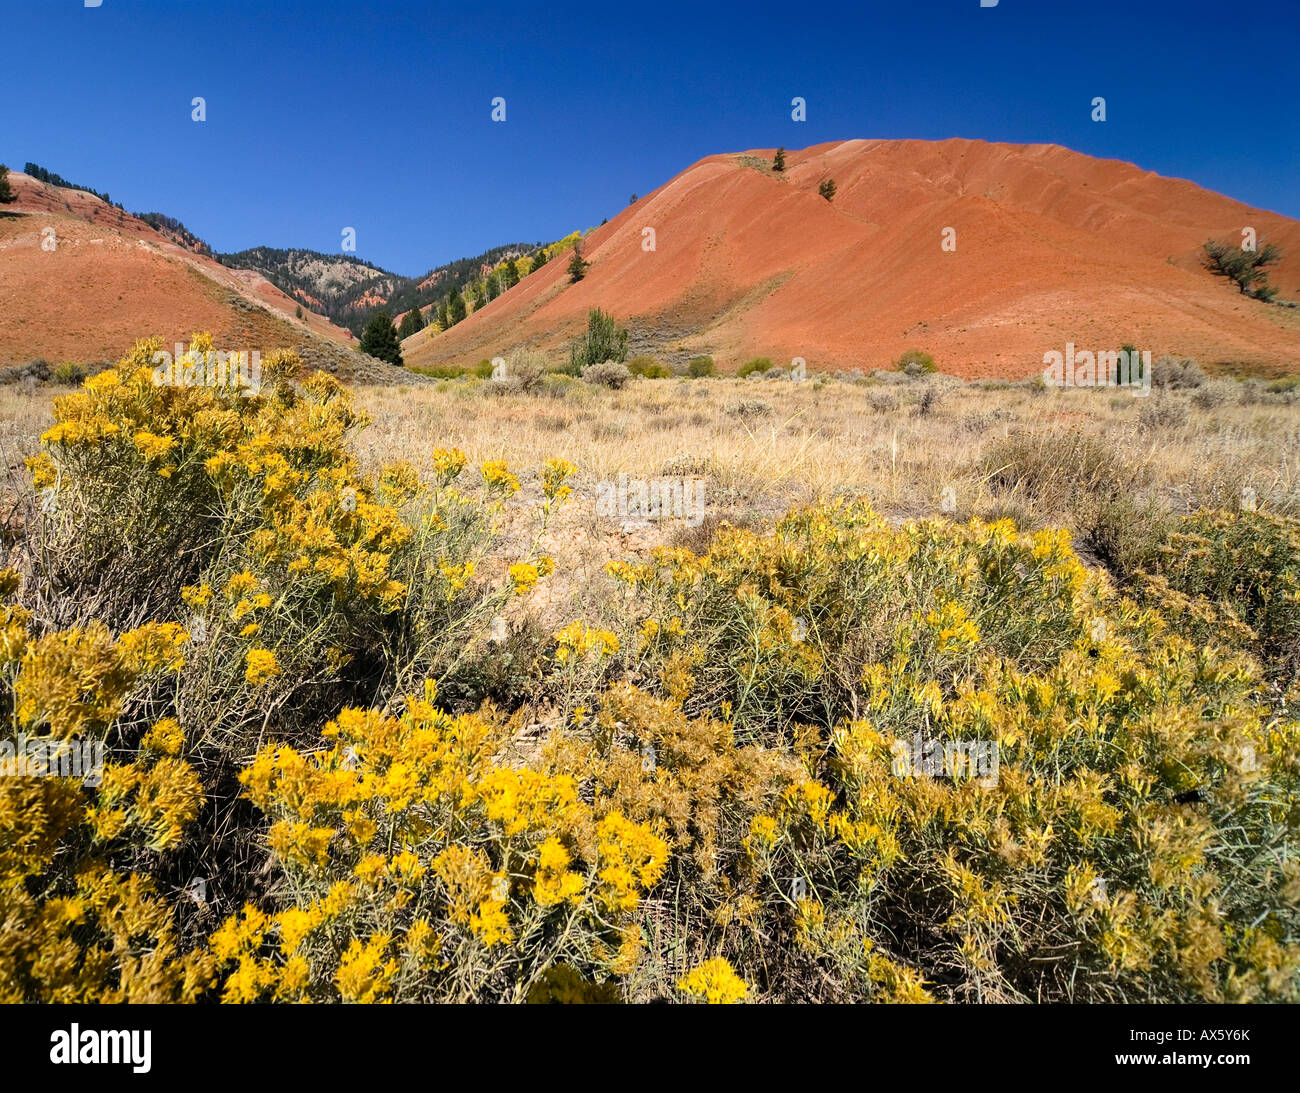 Trockenen roten Hügeln und Prärie Blumen im Vordergrund, größere Yellowstone-Ökosystem, Wyoming, USA, Nordamerika Stockfoto